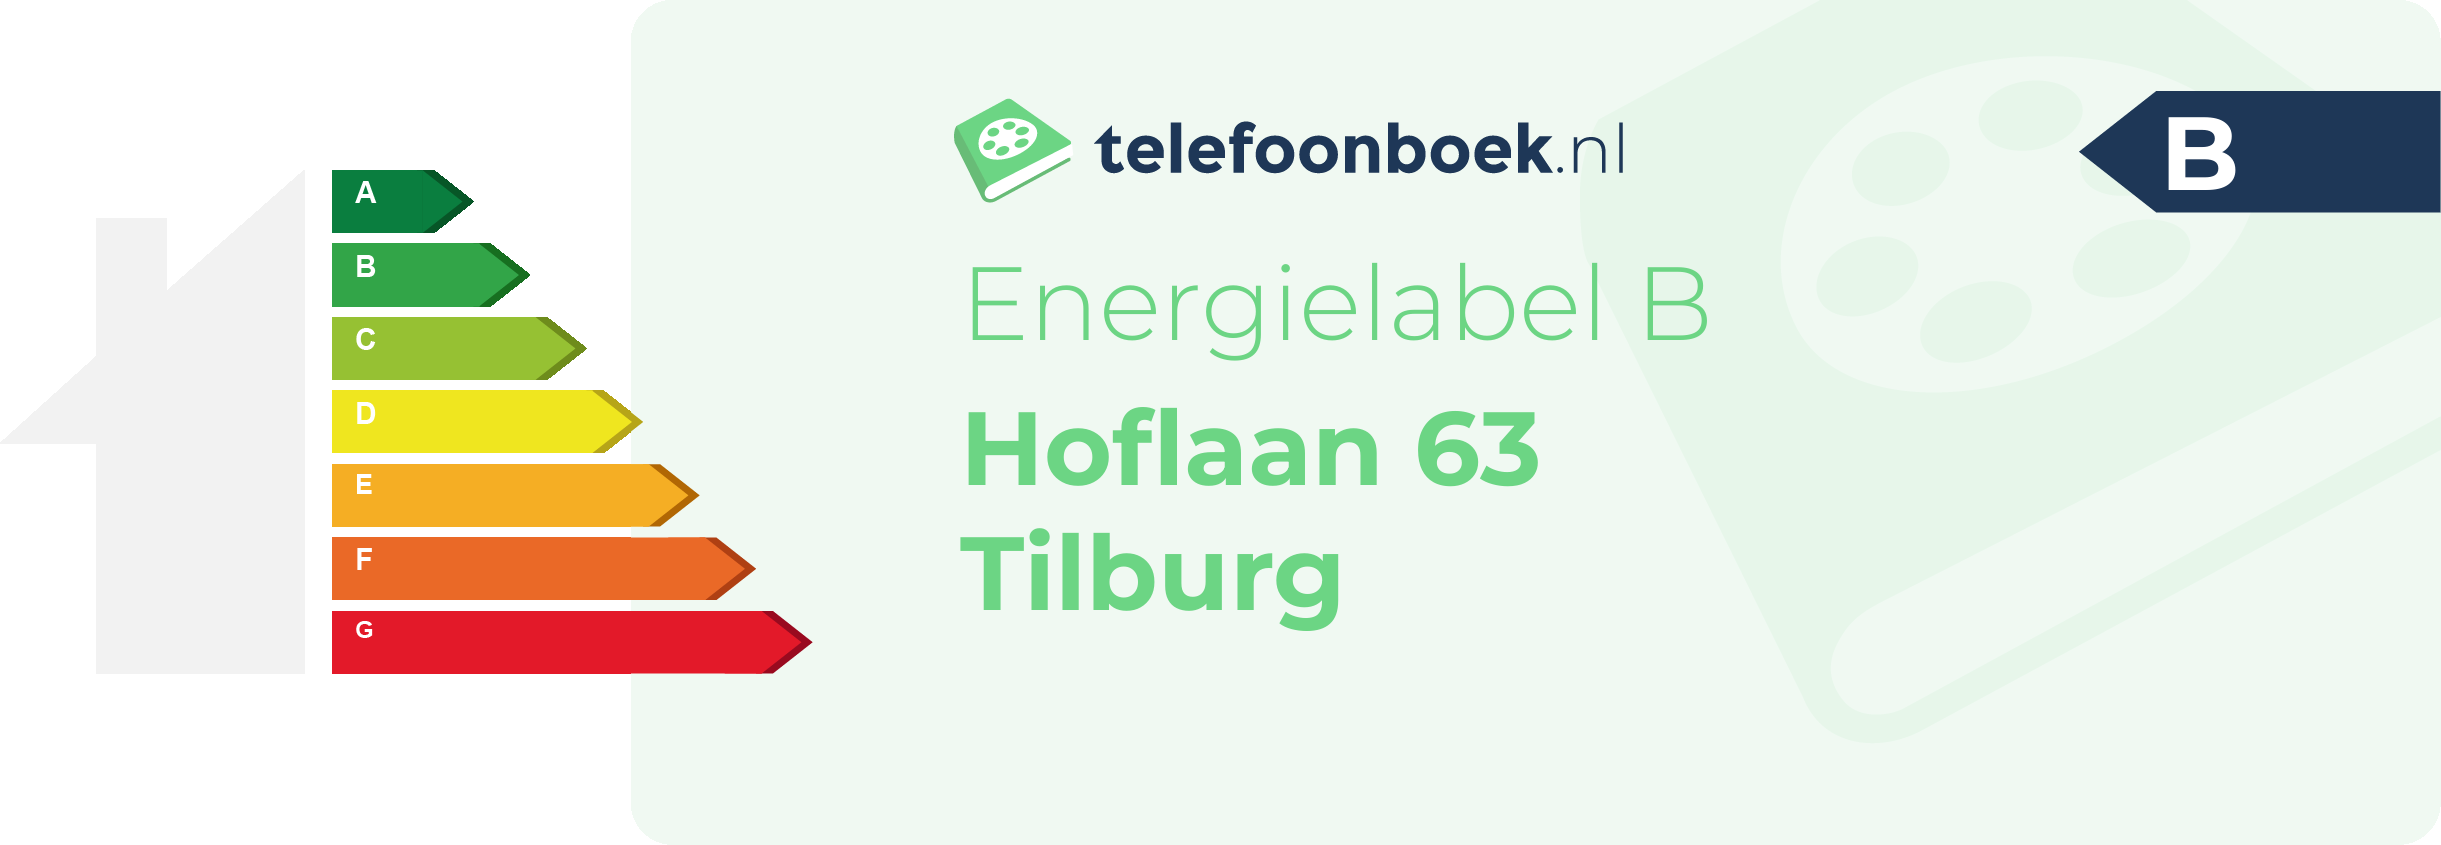 Energielabel Hoflaan 63 Tilburg